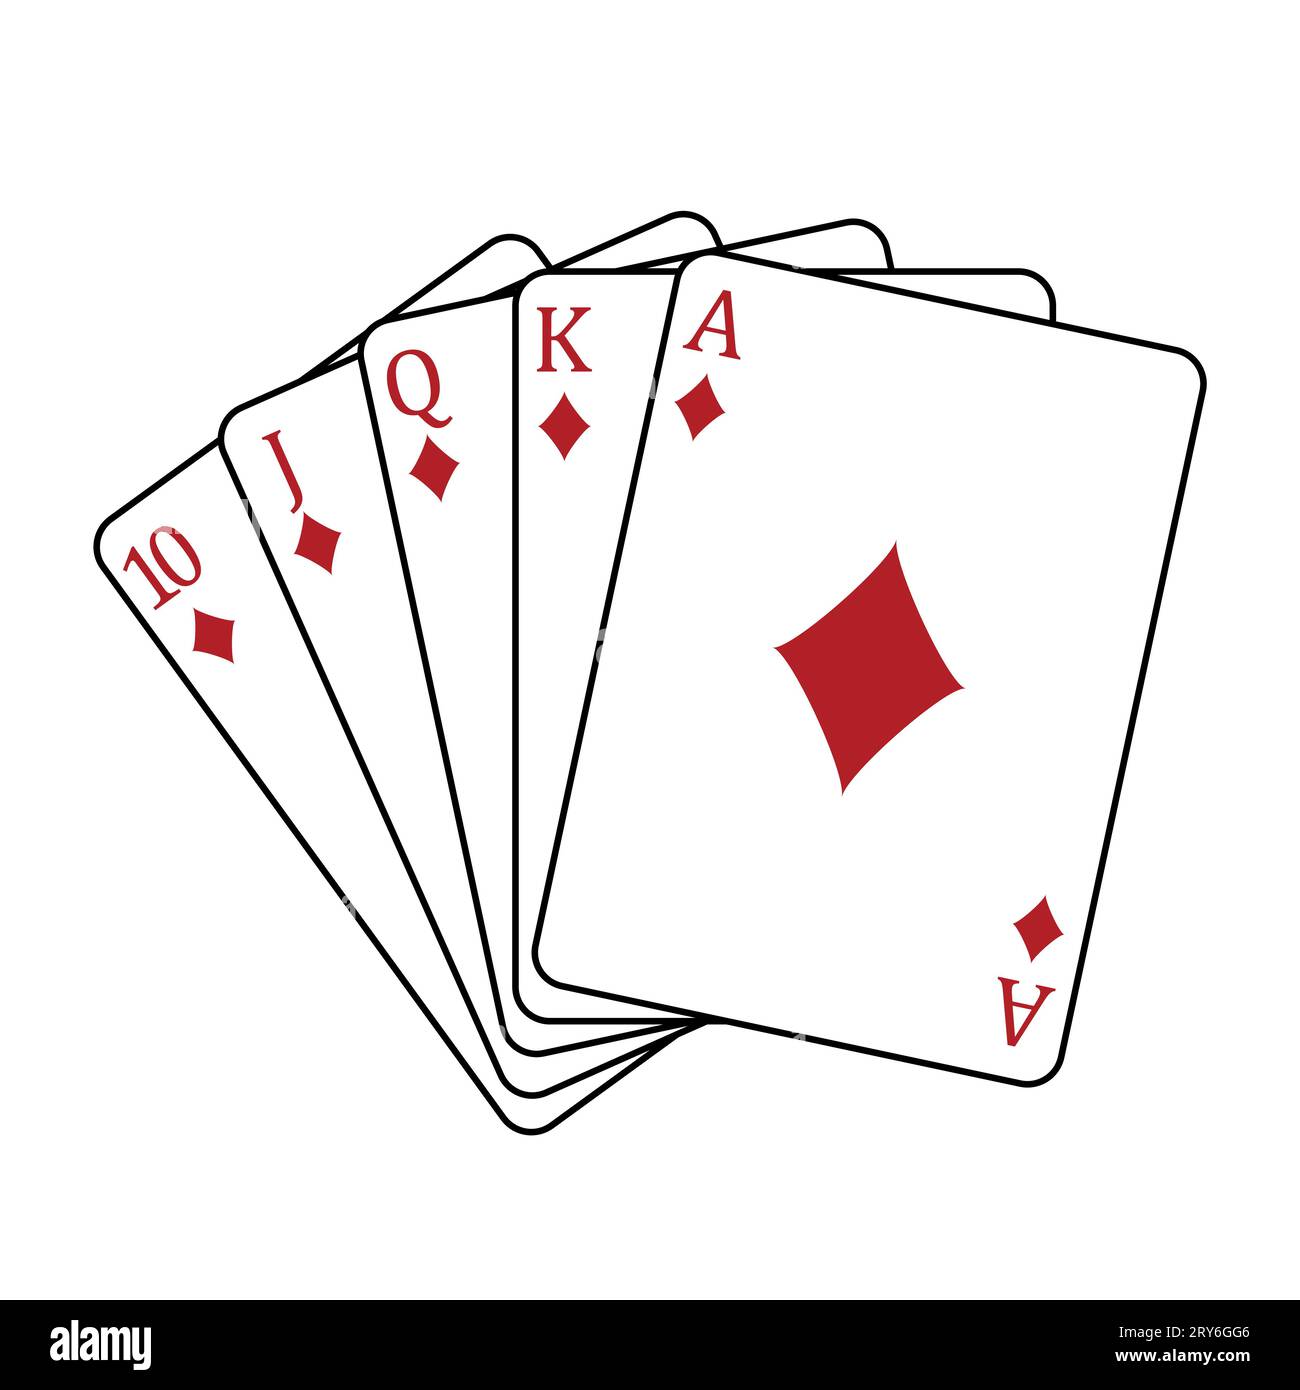 Cartes à jouer - une main de poker composée d'une quinte royale diamants 10 J Q K A, illustration vectorielle isolée sur blanc Illustration de Vecteur